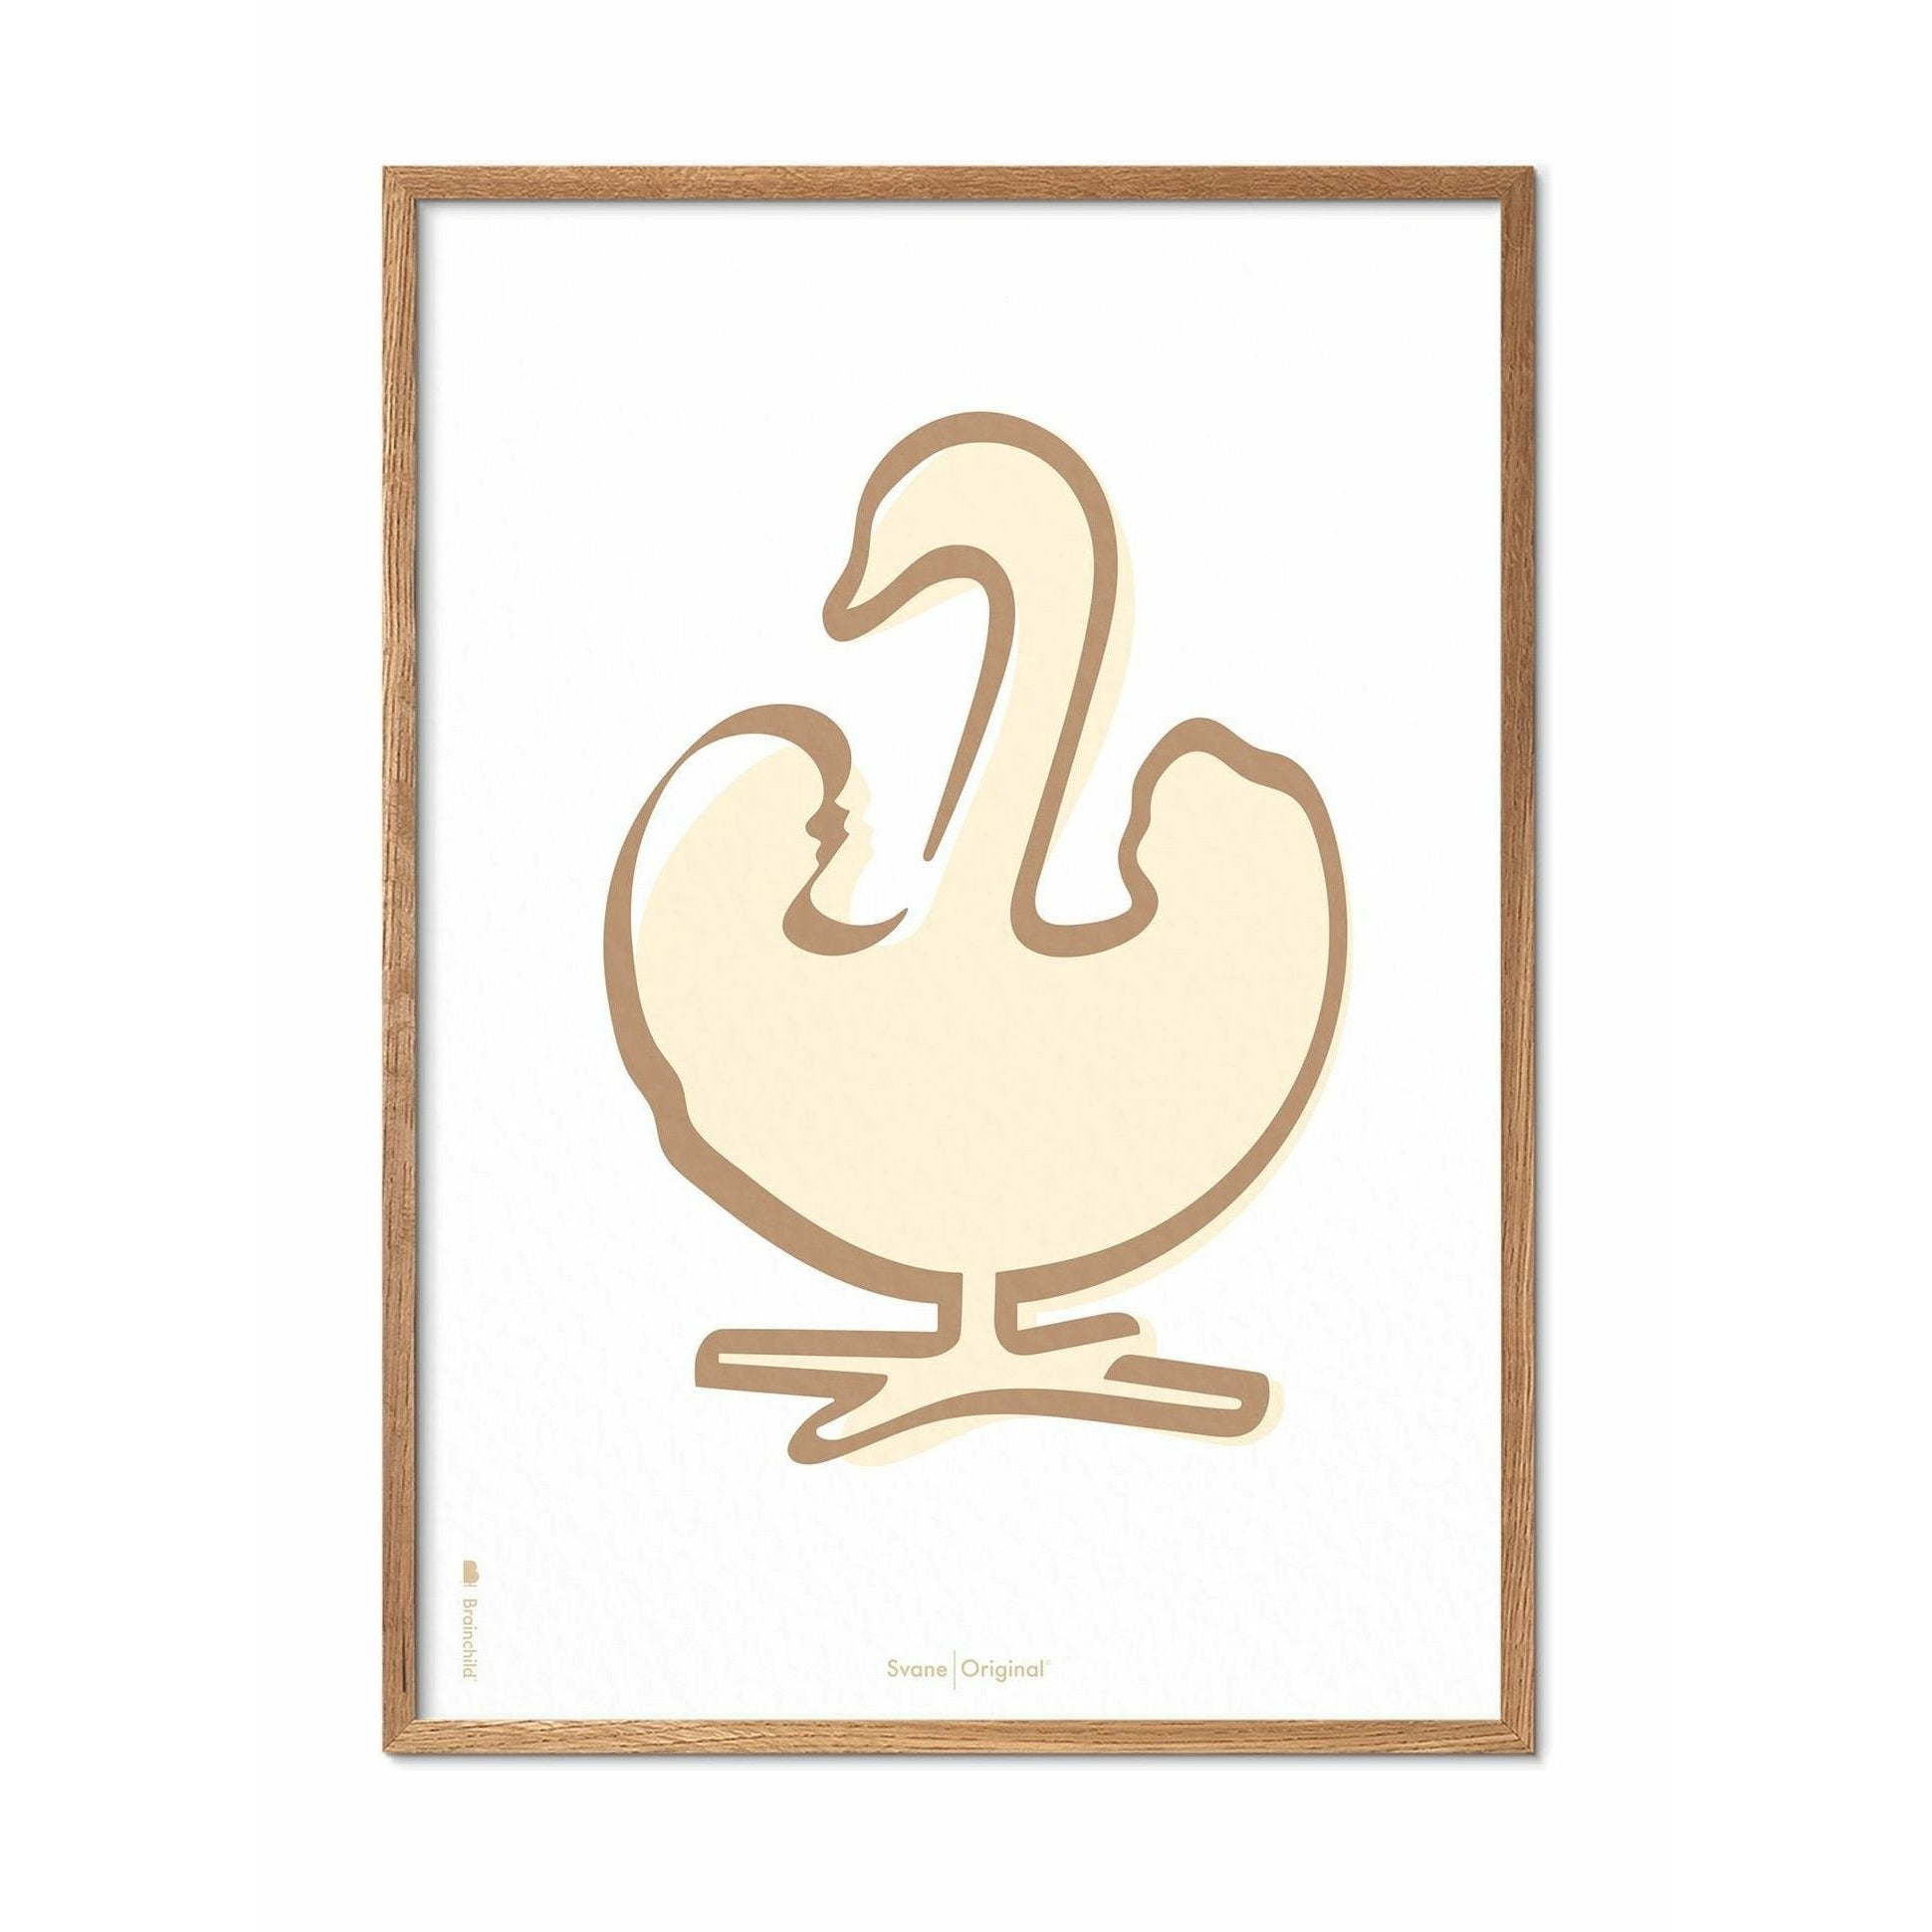 Plakát s labutí labutí, rám vyrobený z lehkého dřeva 30x40 cm, bílé pozadí